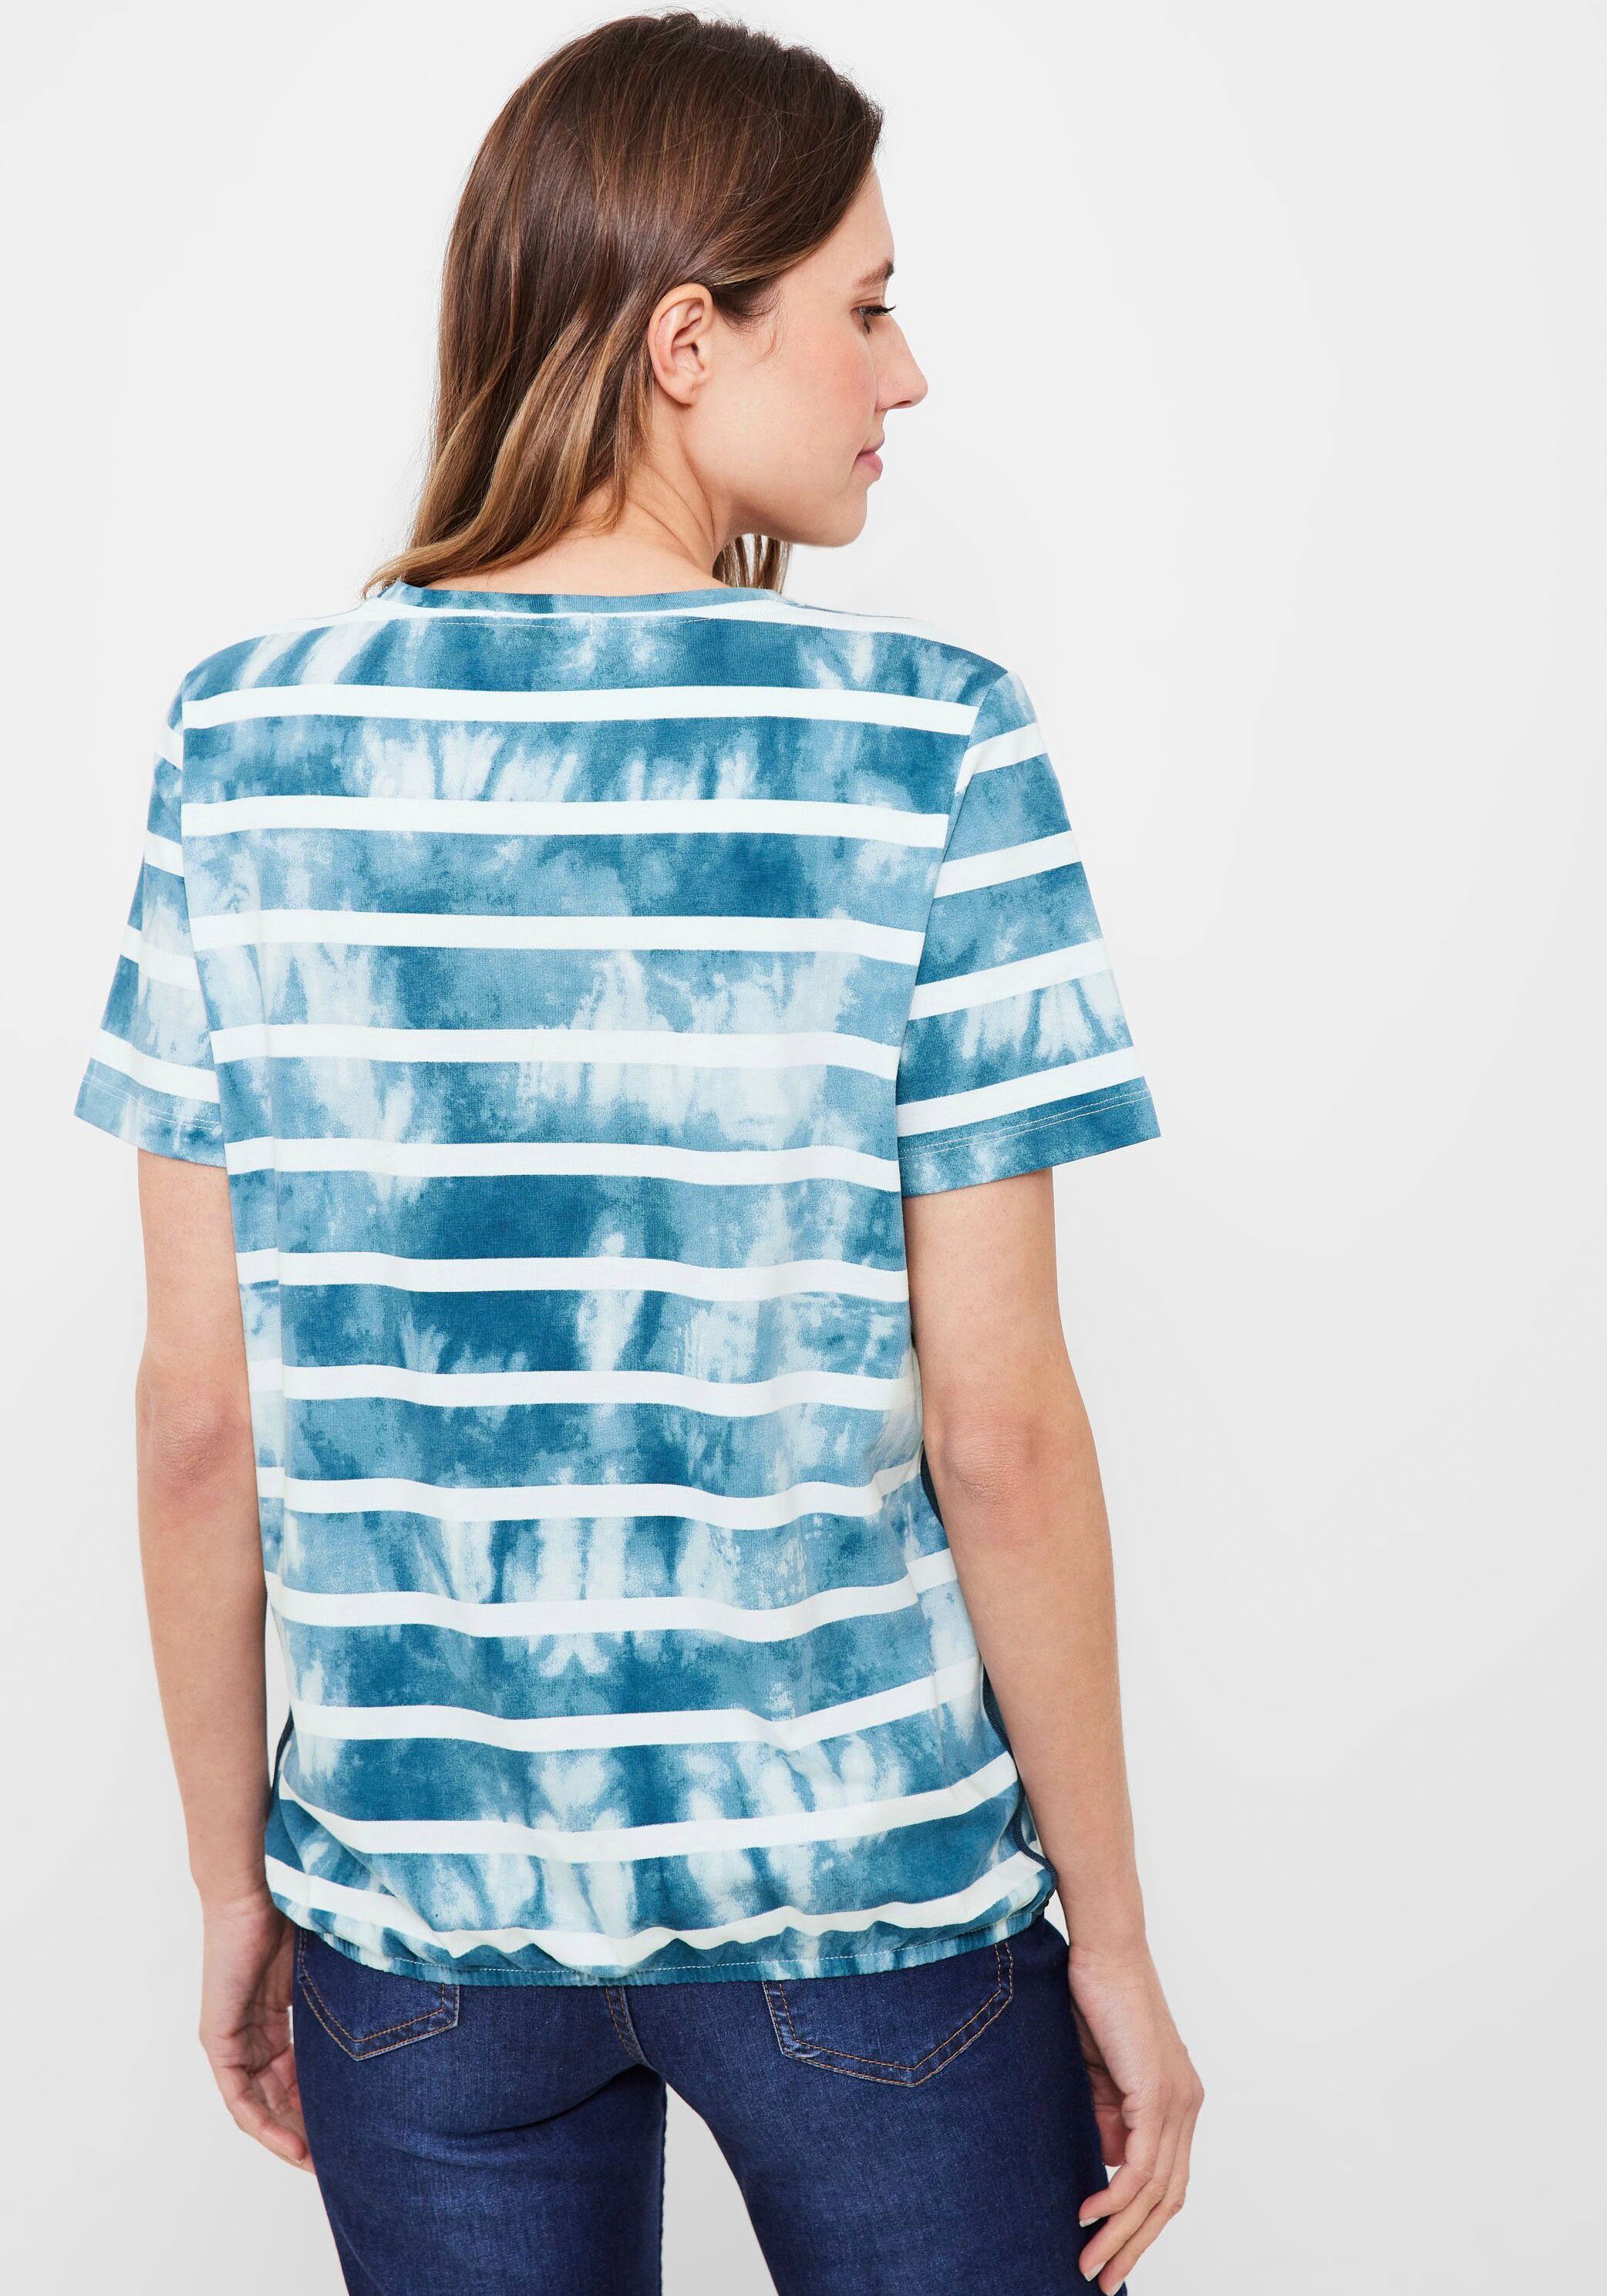 blue Print-Shirt Cecil Paillettenverzierung mit teal